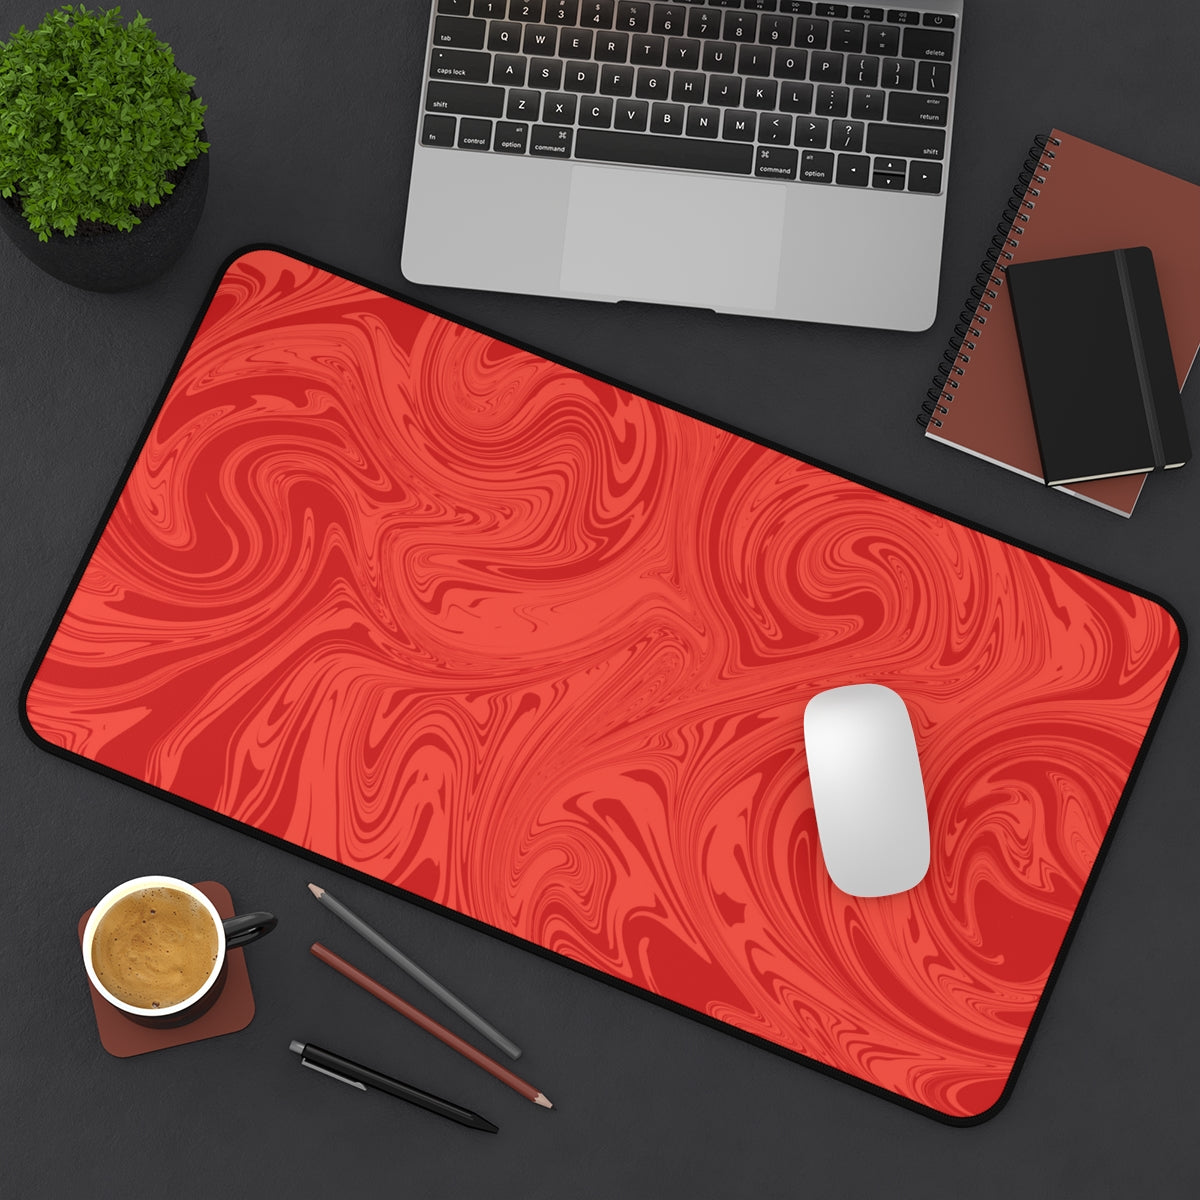 Red Swirl Desk Mat - Desk Cookies